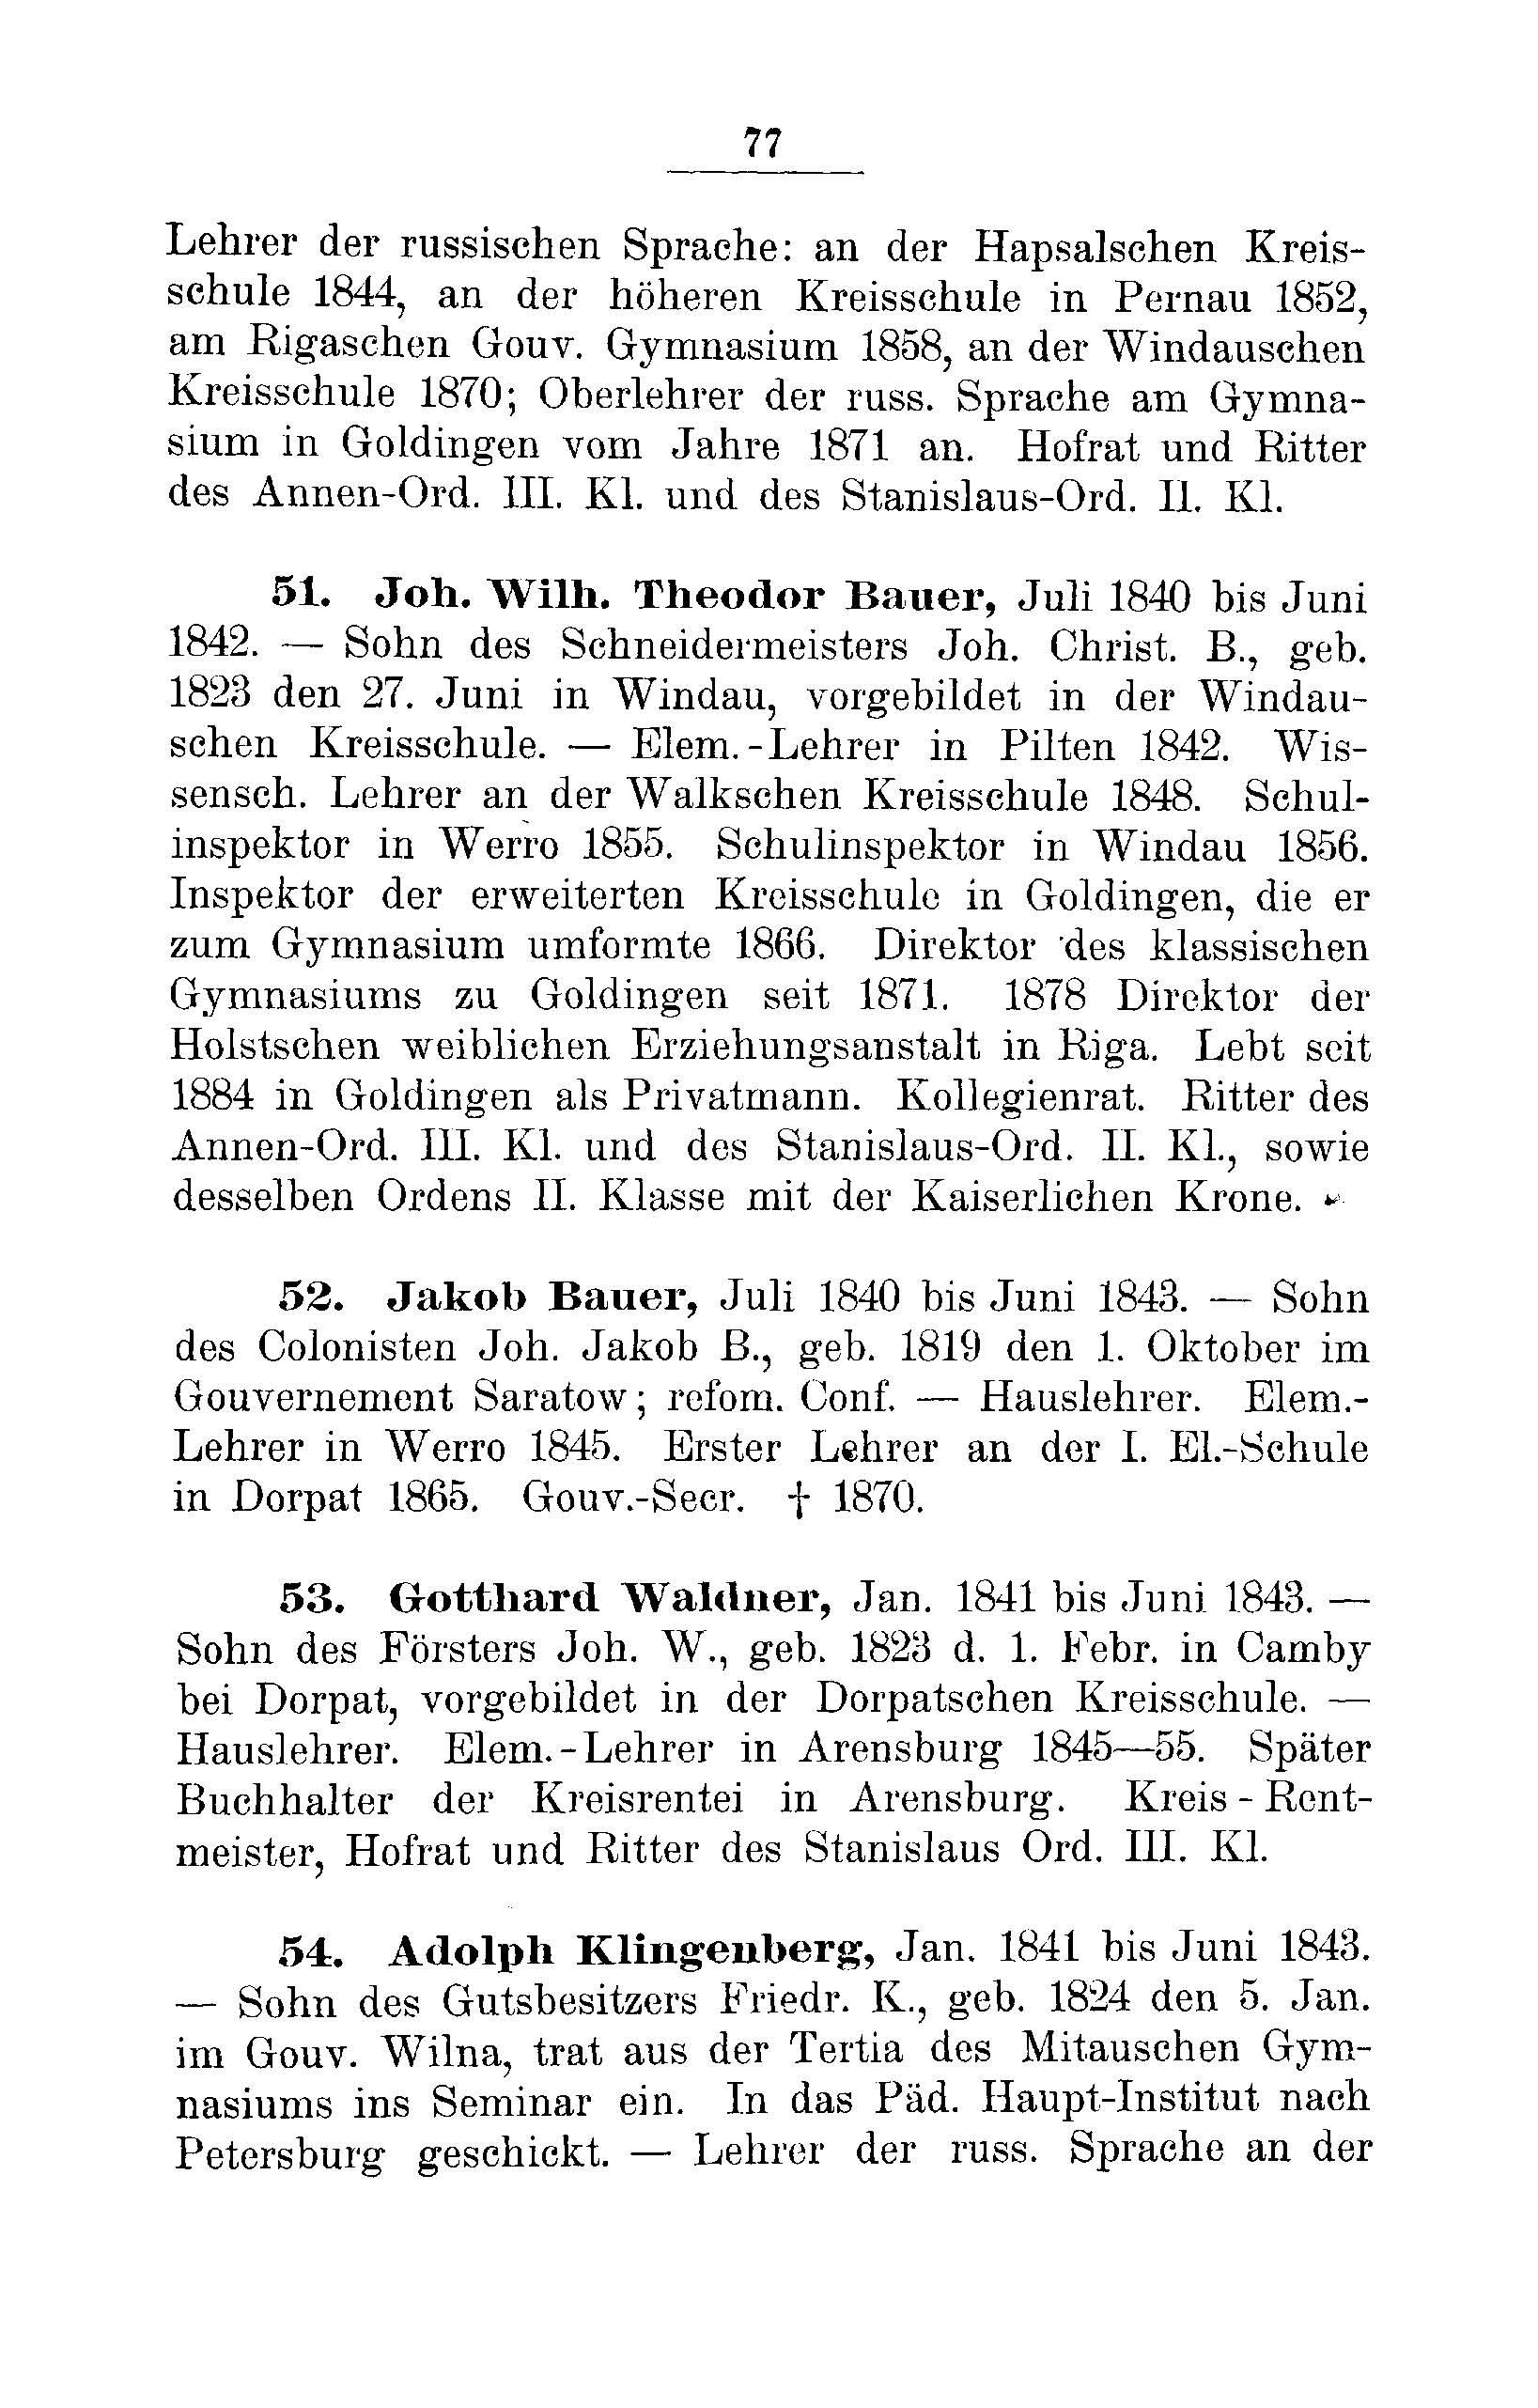 Das Erste Dorpatsche Lehrer-Seminar (1890) | 80. Main body of text